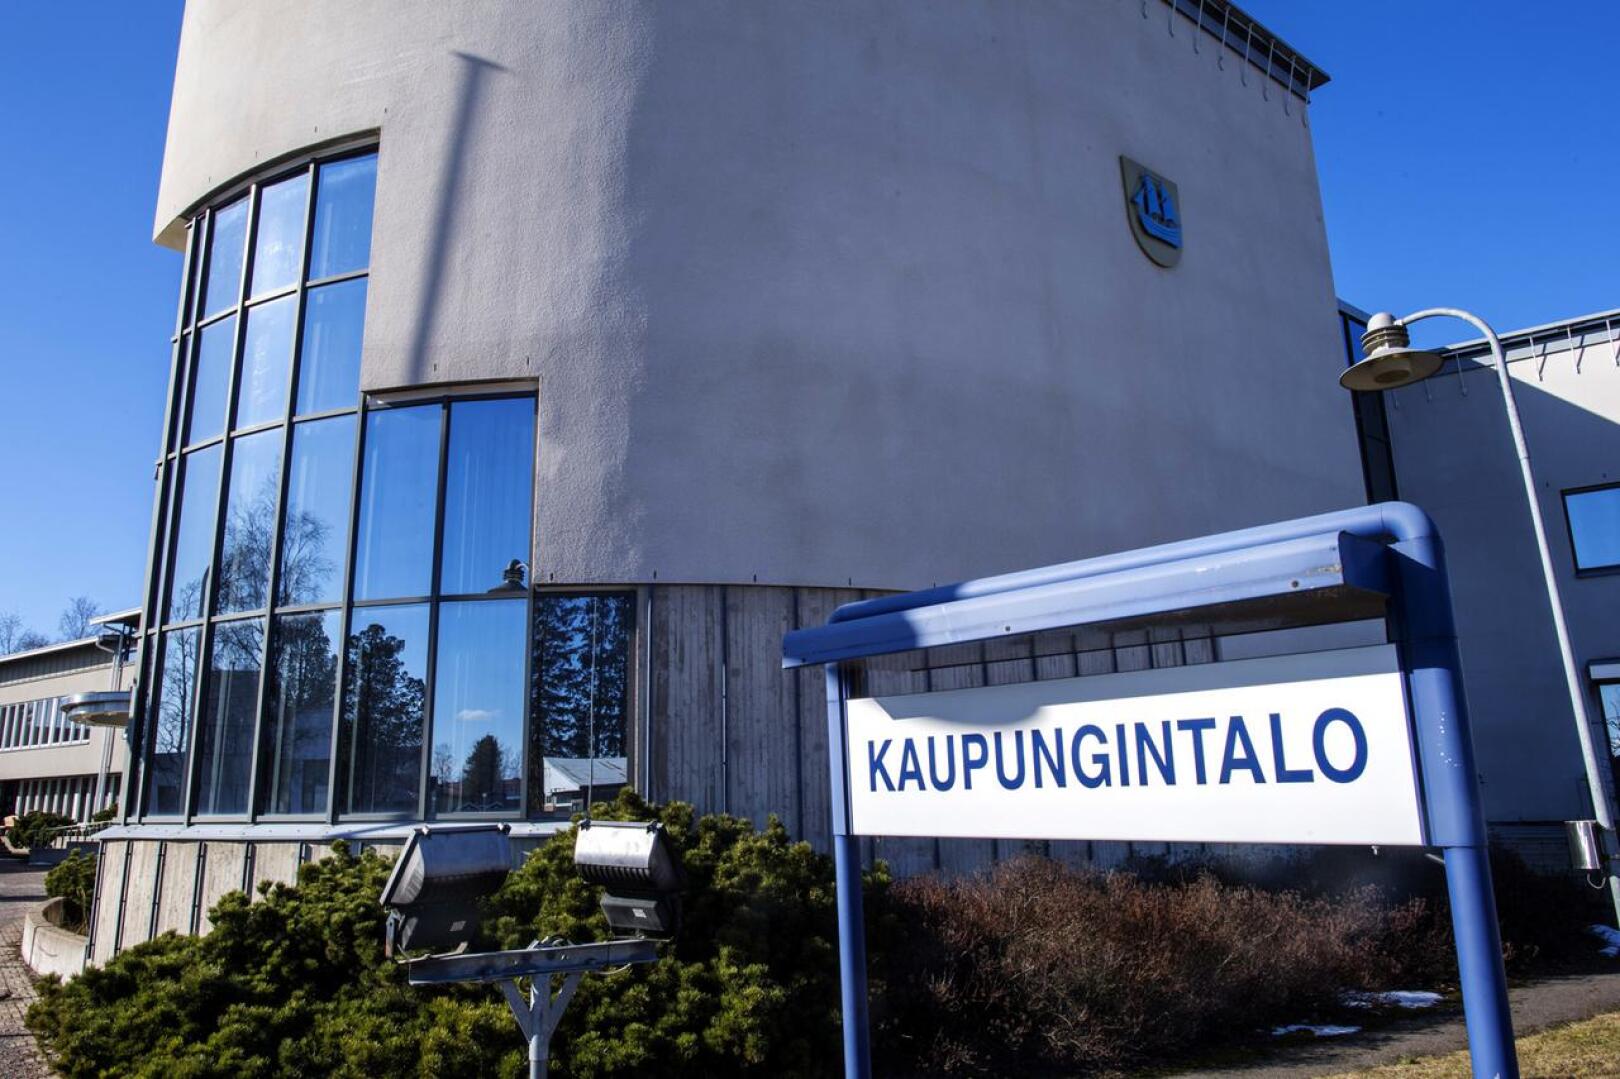 Kalajoen kaupunginvaltuuston kolmas varapuheenjohtaja Sami Salmu epäili, että kaupunginhallituksen kokouksen päätökset olisi tehty muotovirheellisesti, sillä läsnä oli saattanut olla ylimääräinen henkilö.